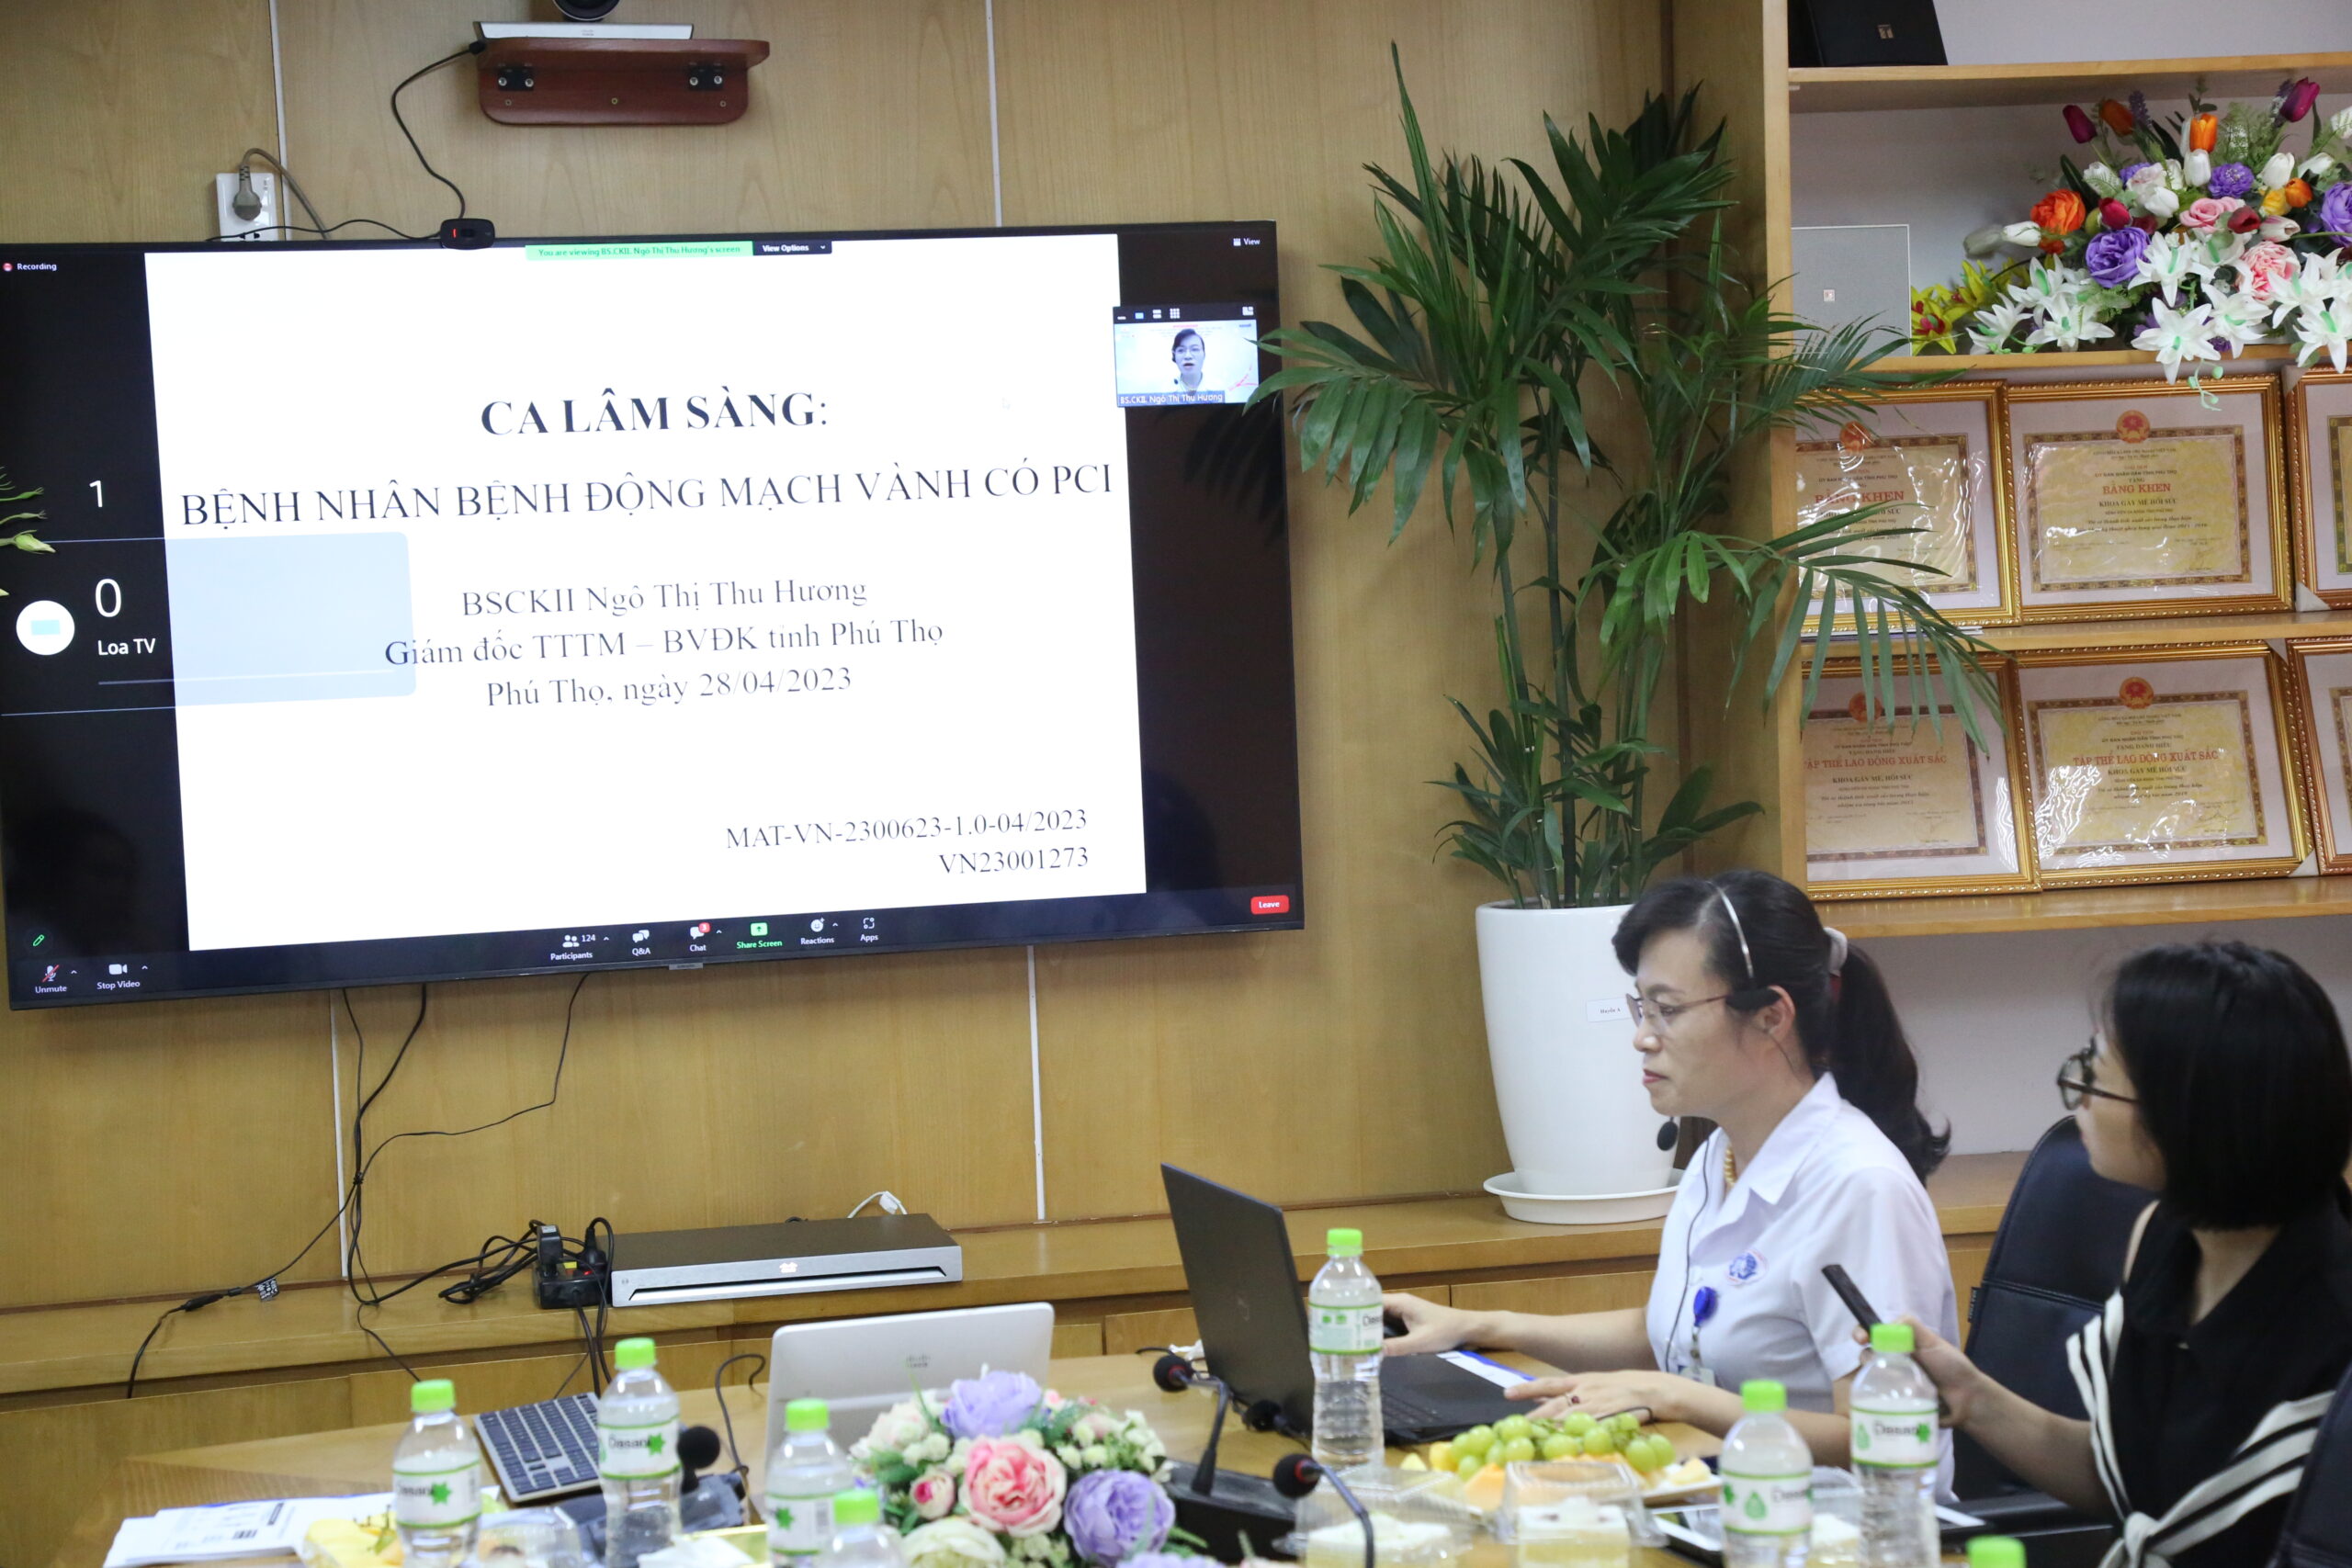 BSCKII Ngô Thị Thu Hương – Giám đốc Trung tâm Tim mạch – Bệnh viện đa khoa tỉnh Phú Thọ báo cáo tại hôi thảo